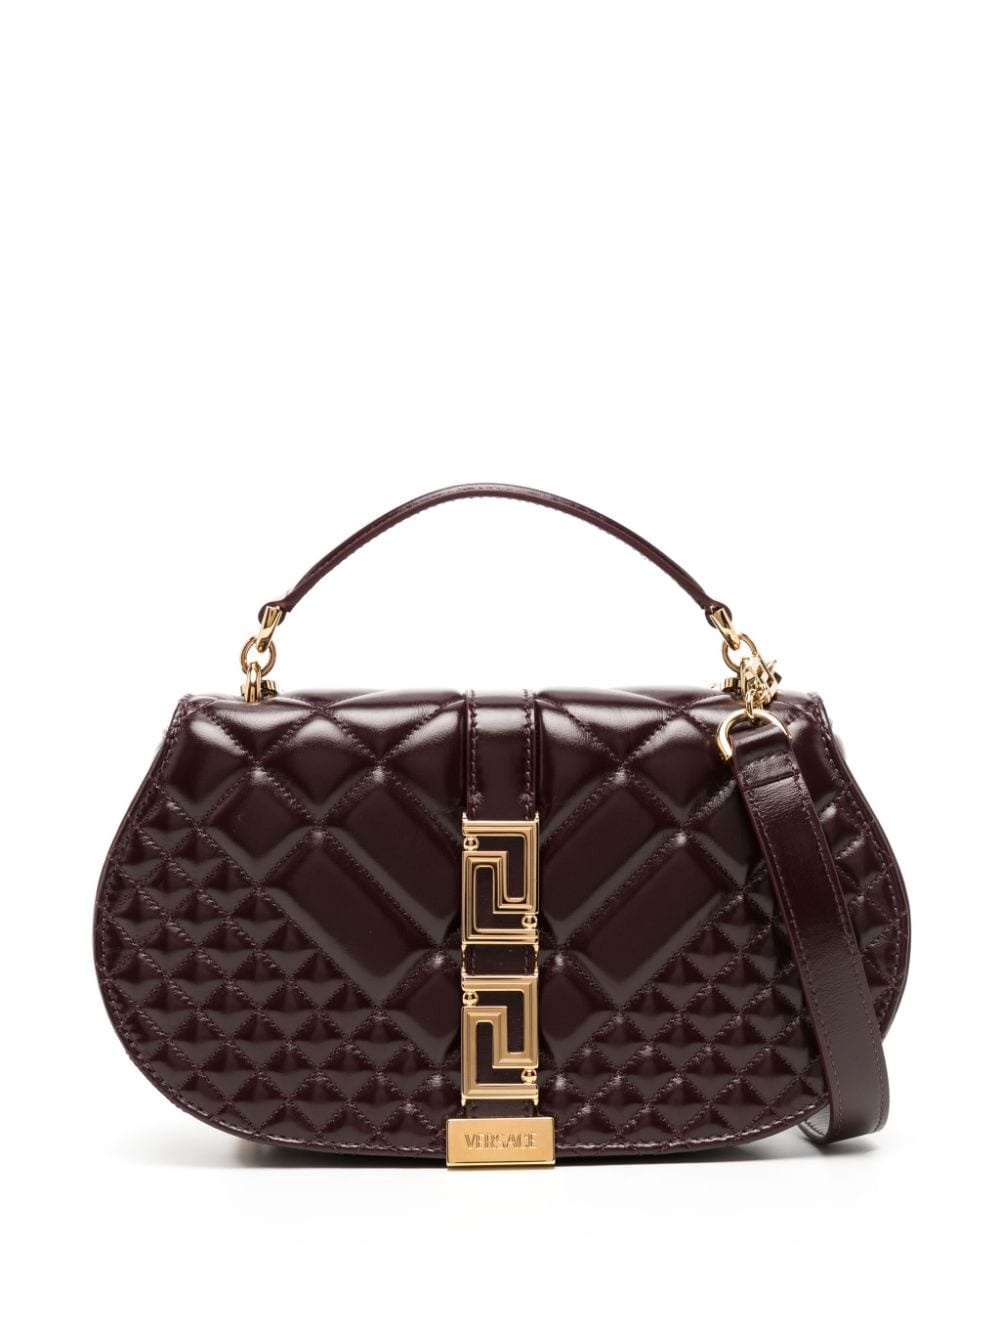 Versace introduces Greca Goddess top handle bag